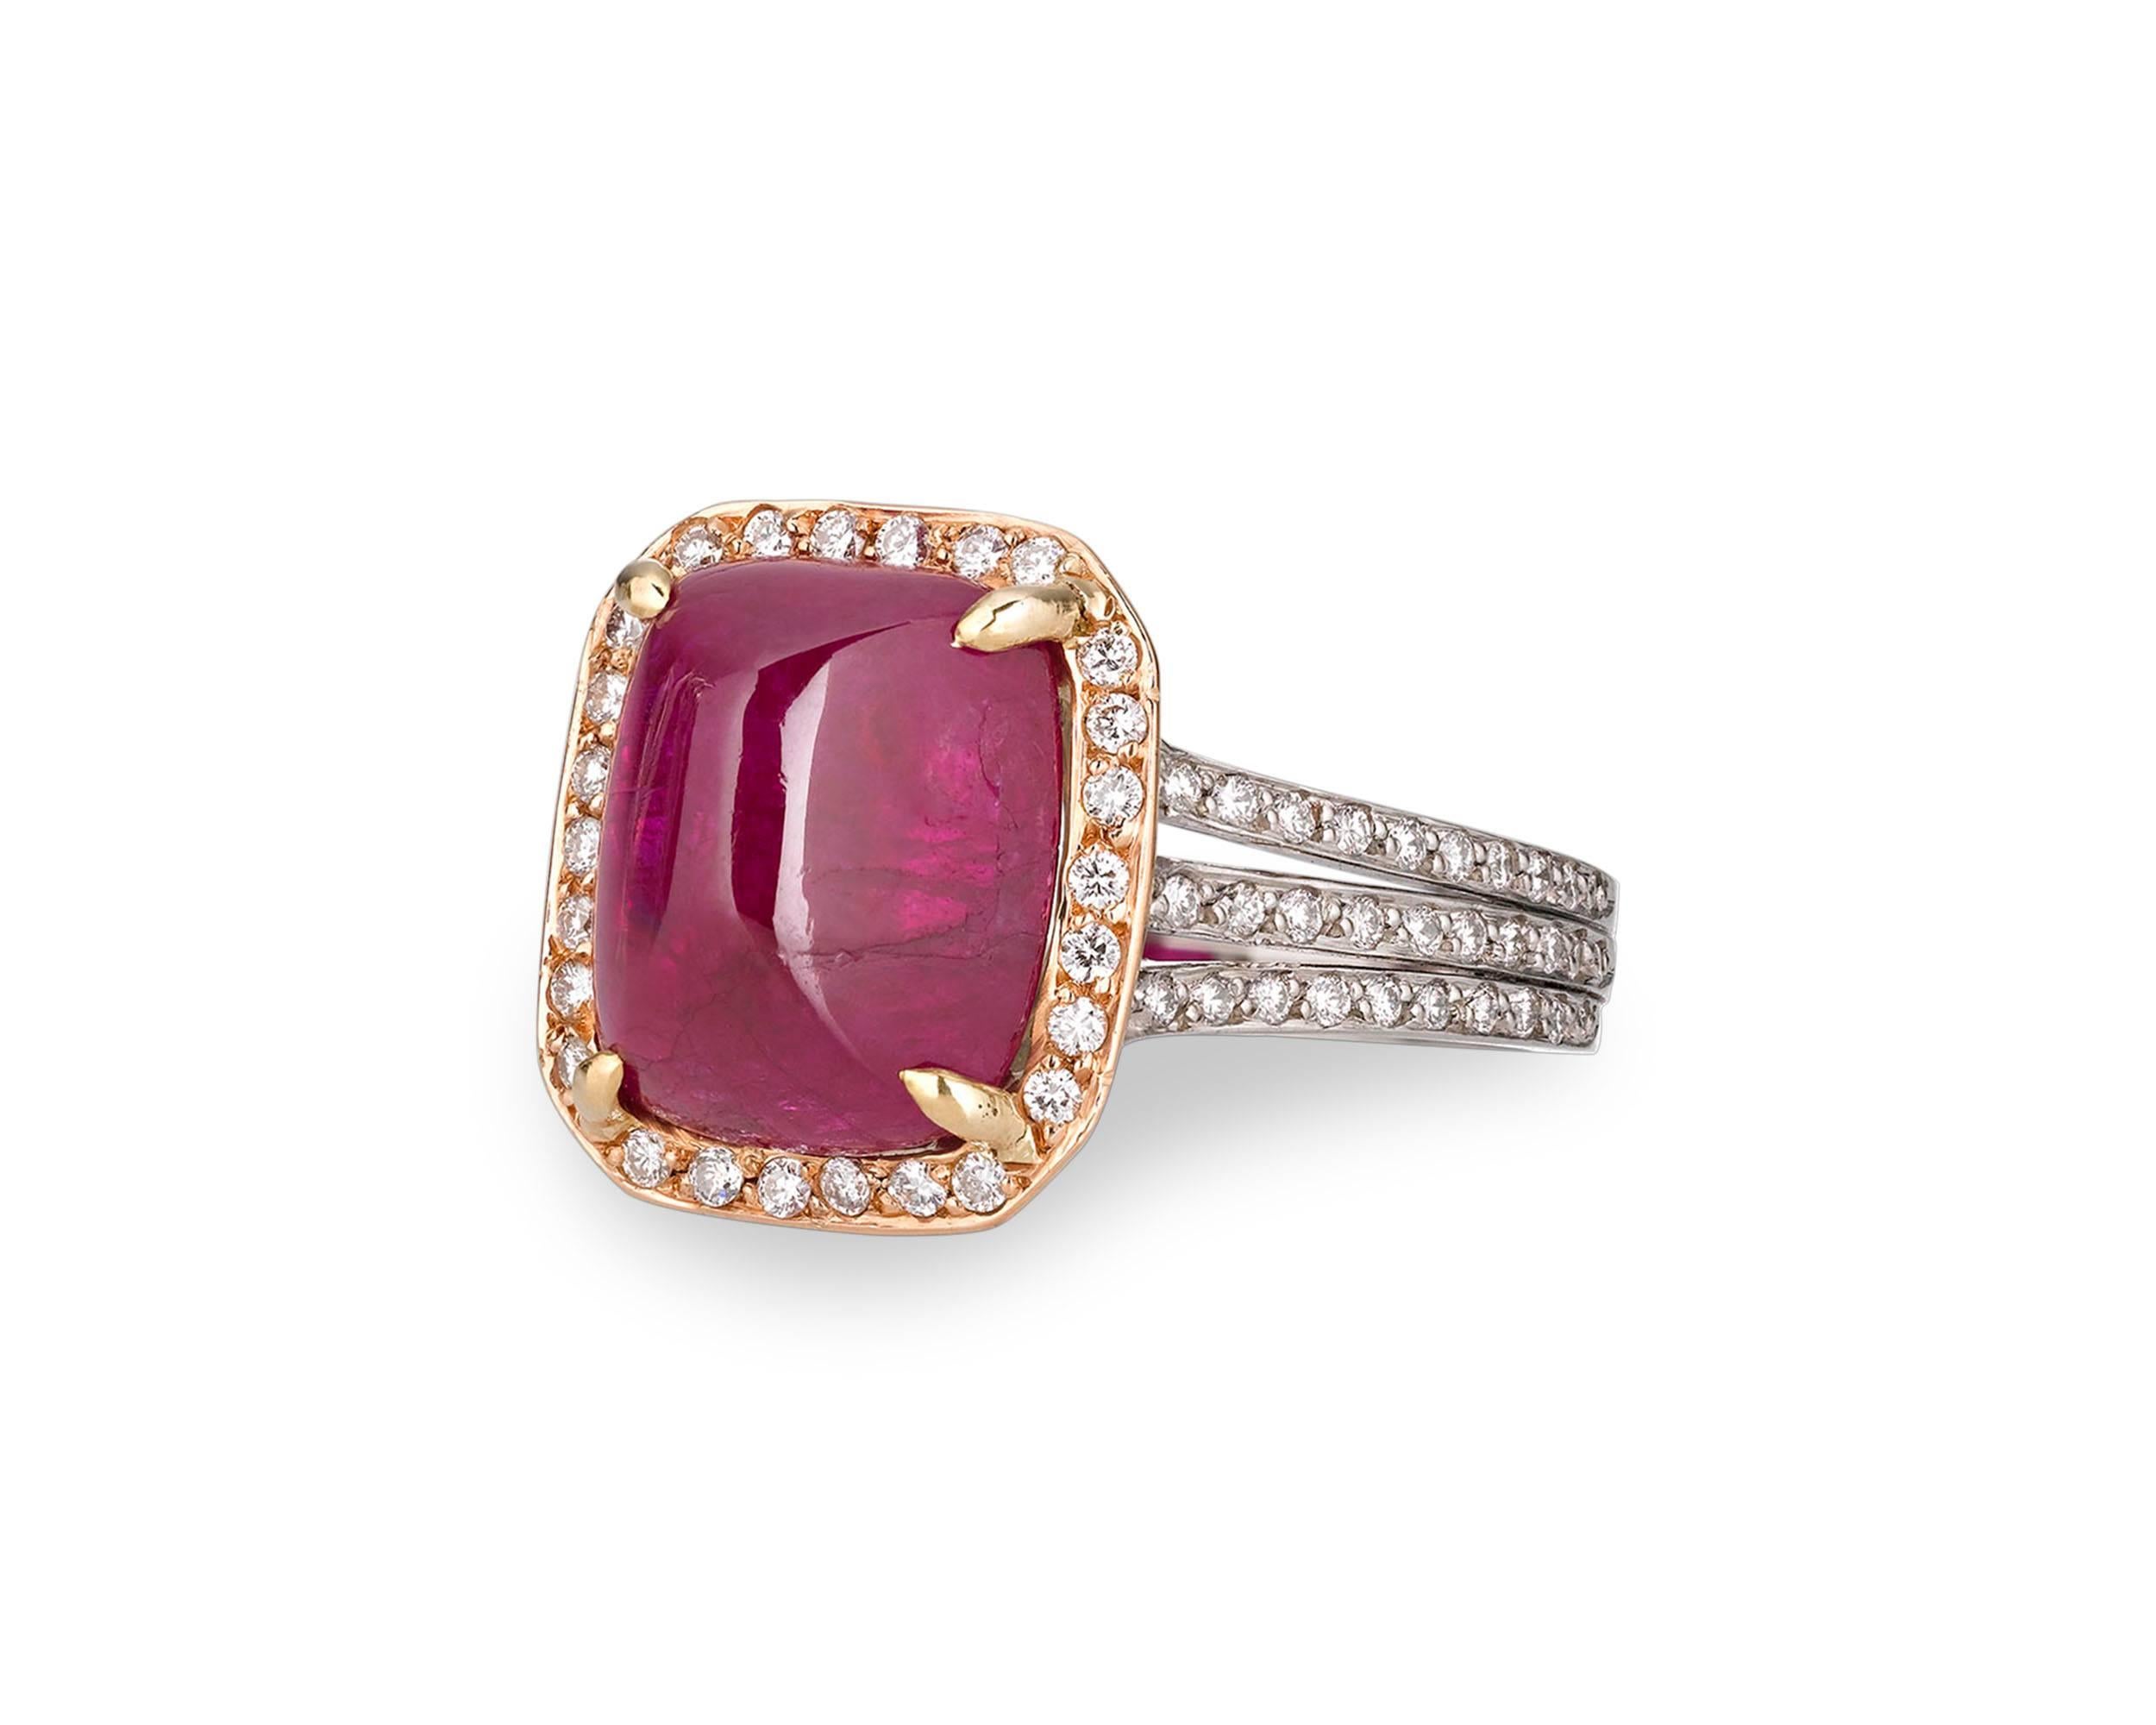 Ein seltener Burma-Cabochon-Rubin besticht in diesem außergewöhnlichen Ring inmitten eines Halos aus Diamanten. Das außergewöhnliche Juwel wiegt 6,31 Karat und sein Zuckerhut-Schliff bringt den intensiven roten Farbton, für den Burma-Rubine so